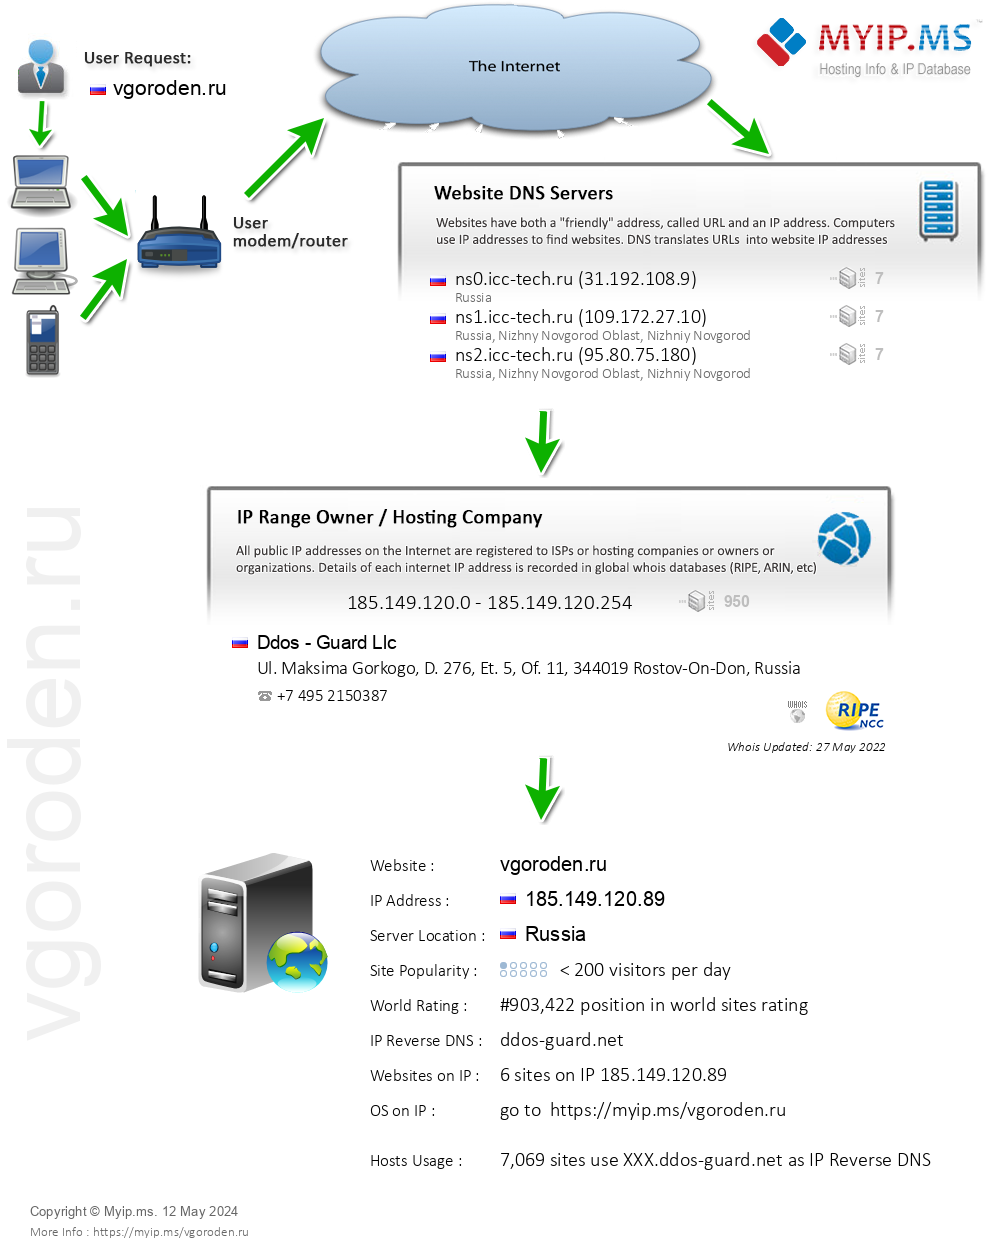 Vgoroden.ru - Website Hosting Visual IP Diagram